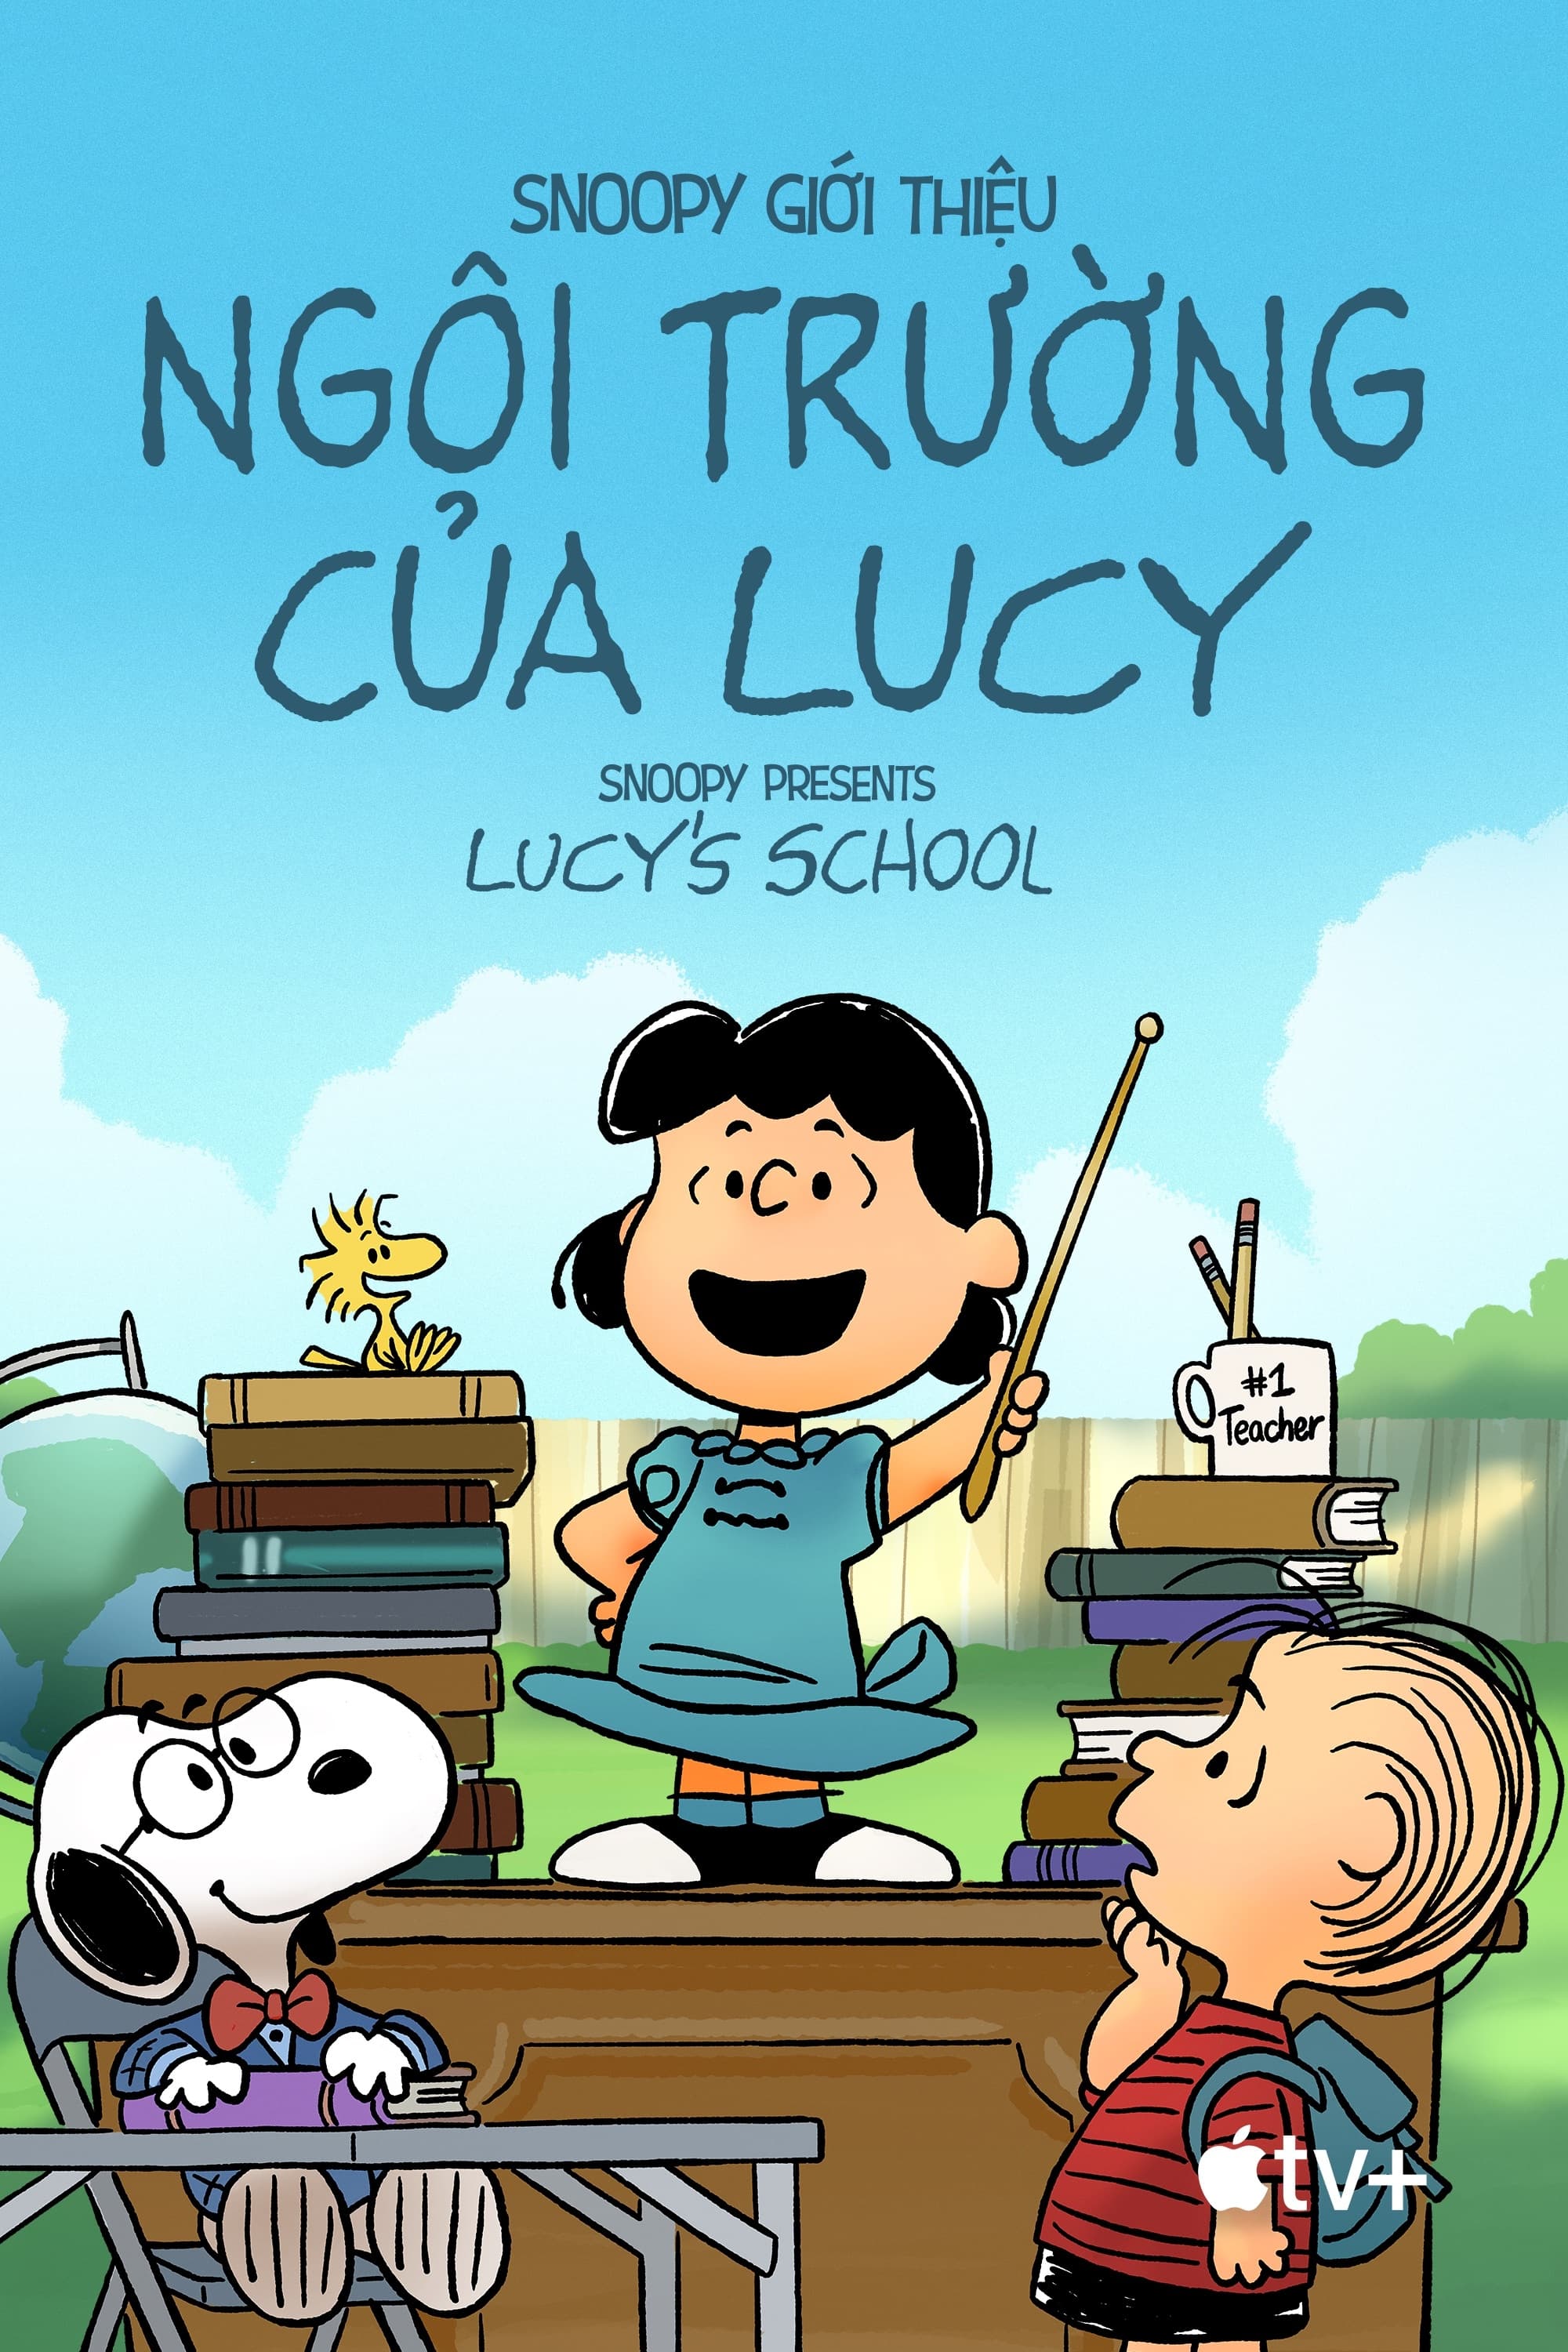 Snoopy Giới Thiệu: Ngôi Trường của Lucy